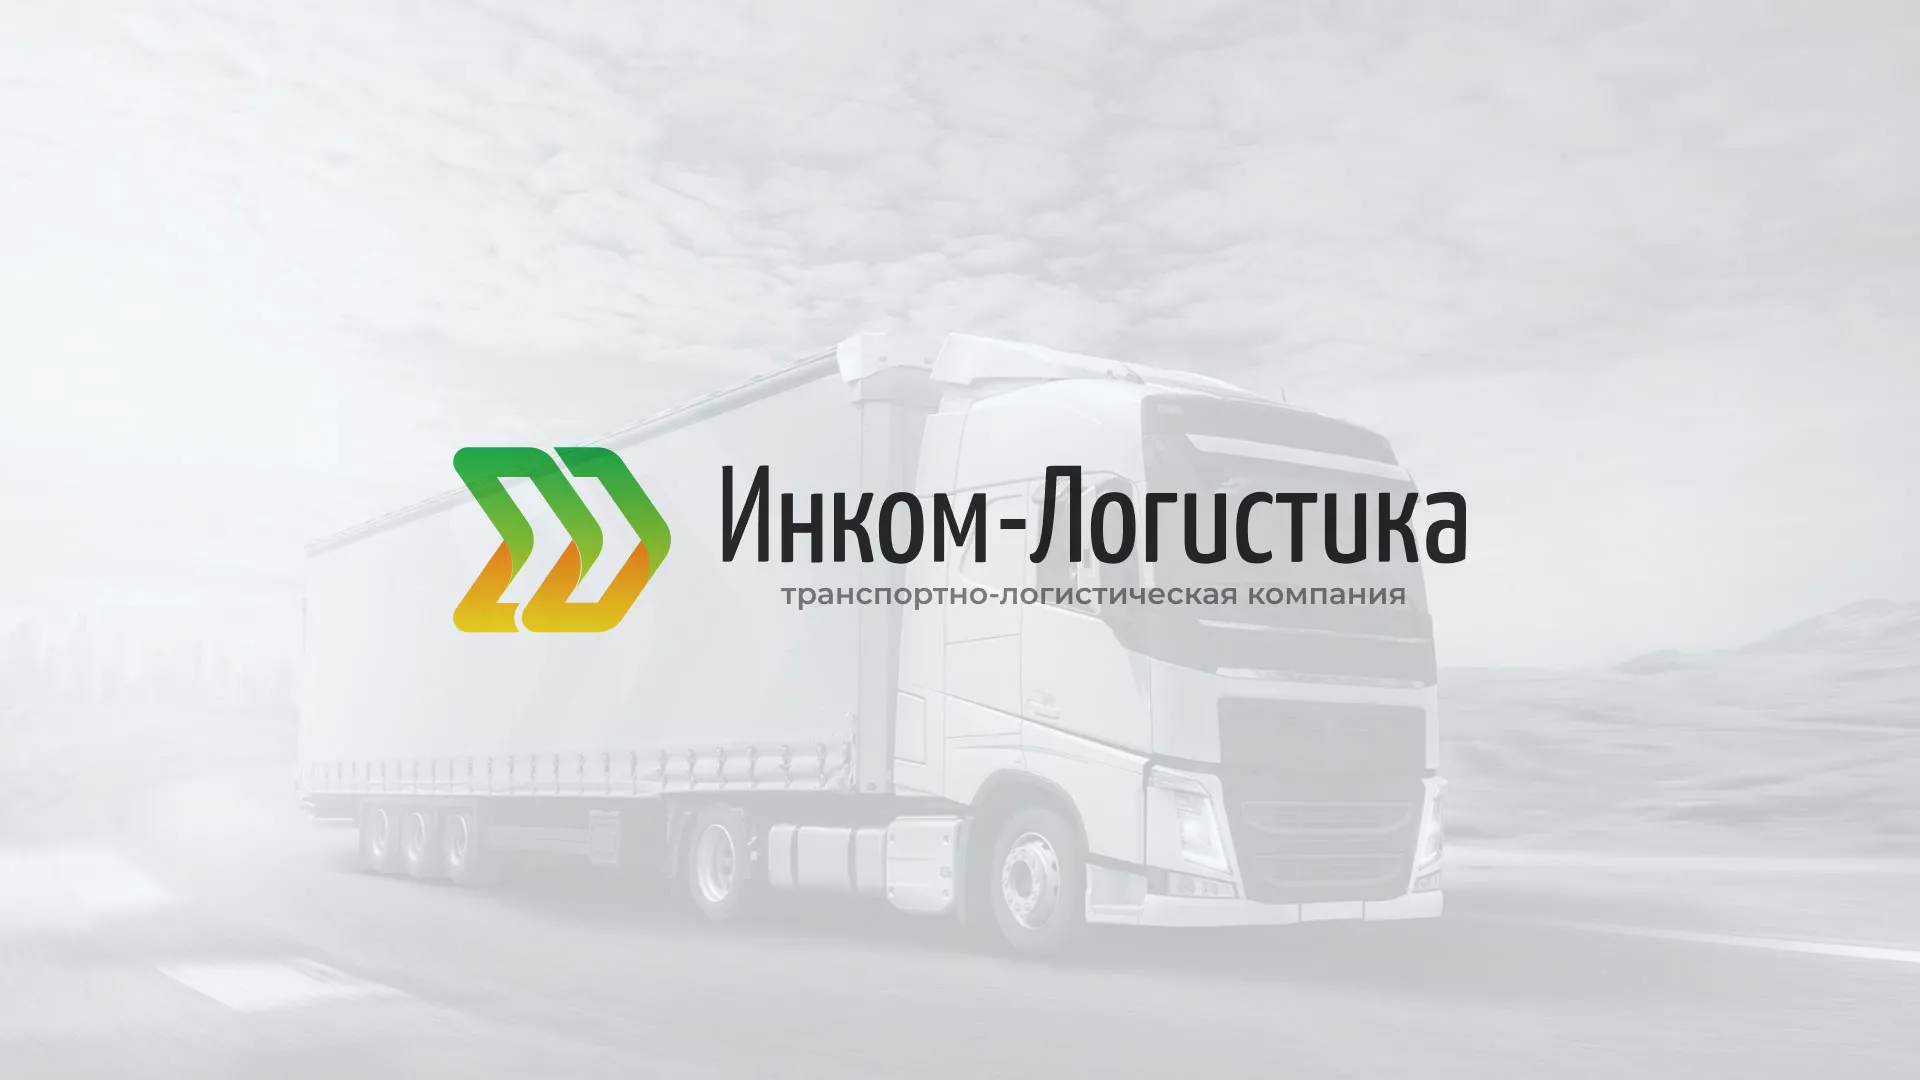 Разработка логотипа и сайта компании «Инком-Логистика» в Анжеро-Судженске